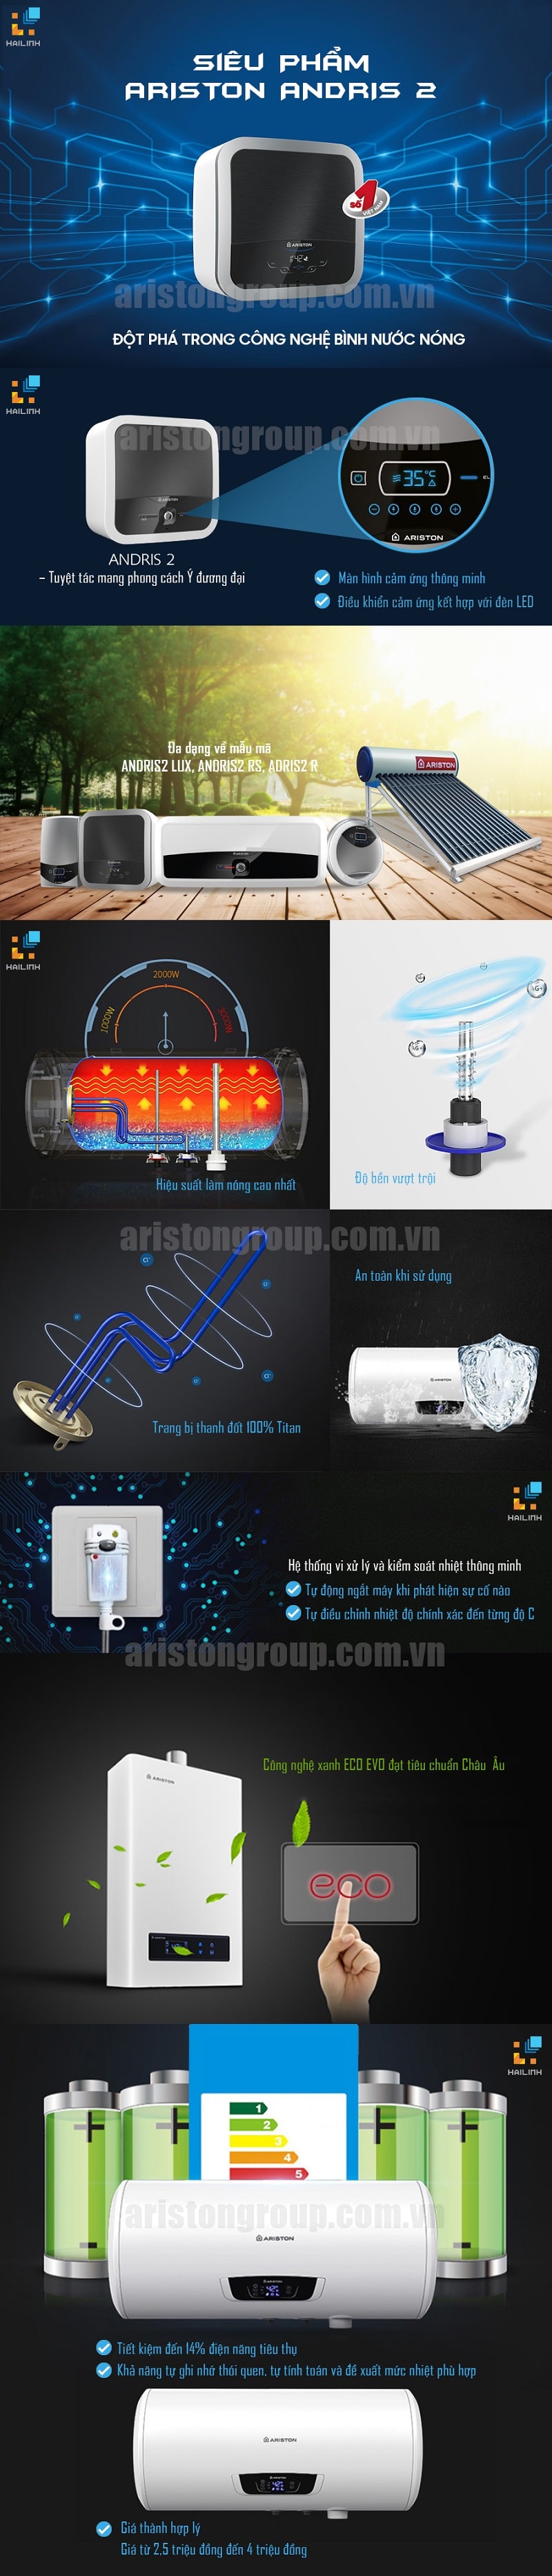 [Infographic]Siêu phẩm Ariston ANDRIS 2 đột phá công nghệ bình nước nóng 1